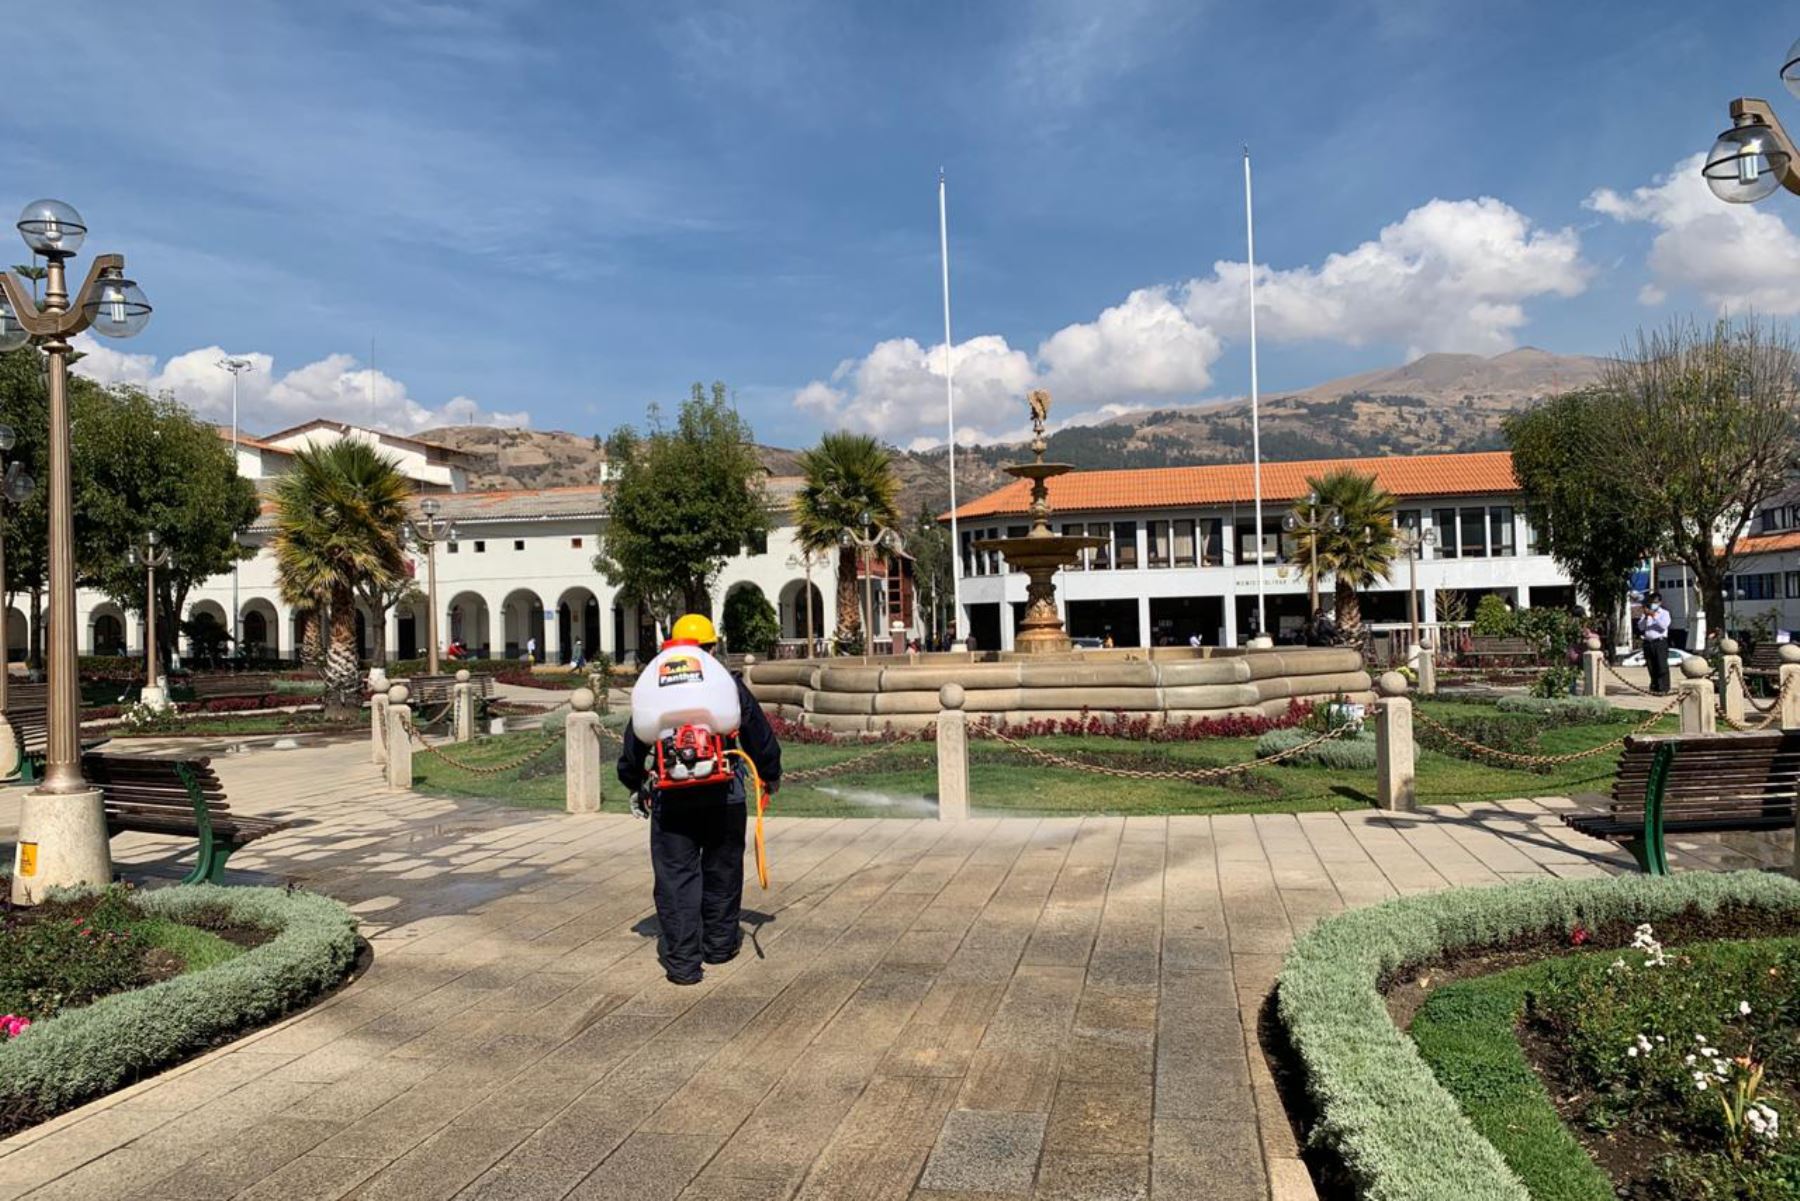 La municipalidad provincial de Huaraz (Áncash) no atenderá a los usuarios durante cinco días tras detectarse casos de covid-19. Foto: ANDINA/Difusión